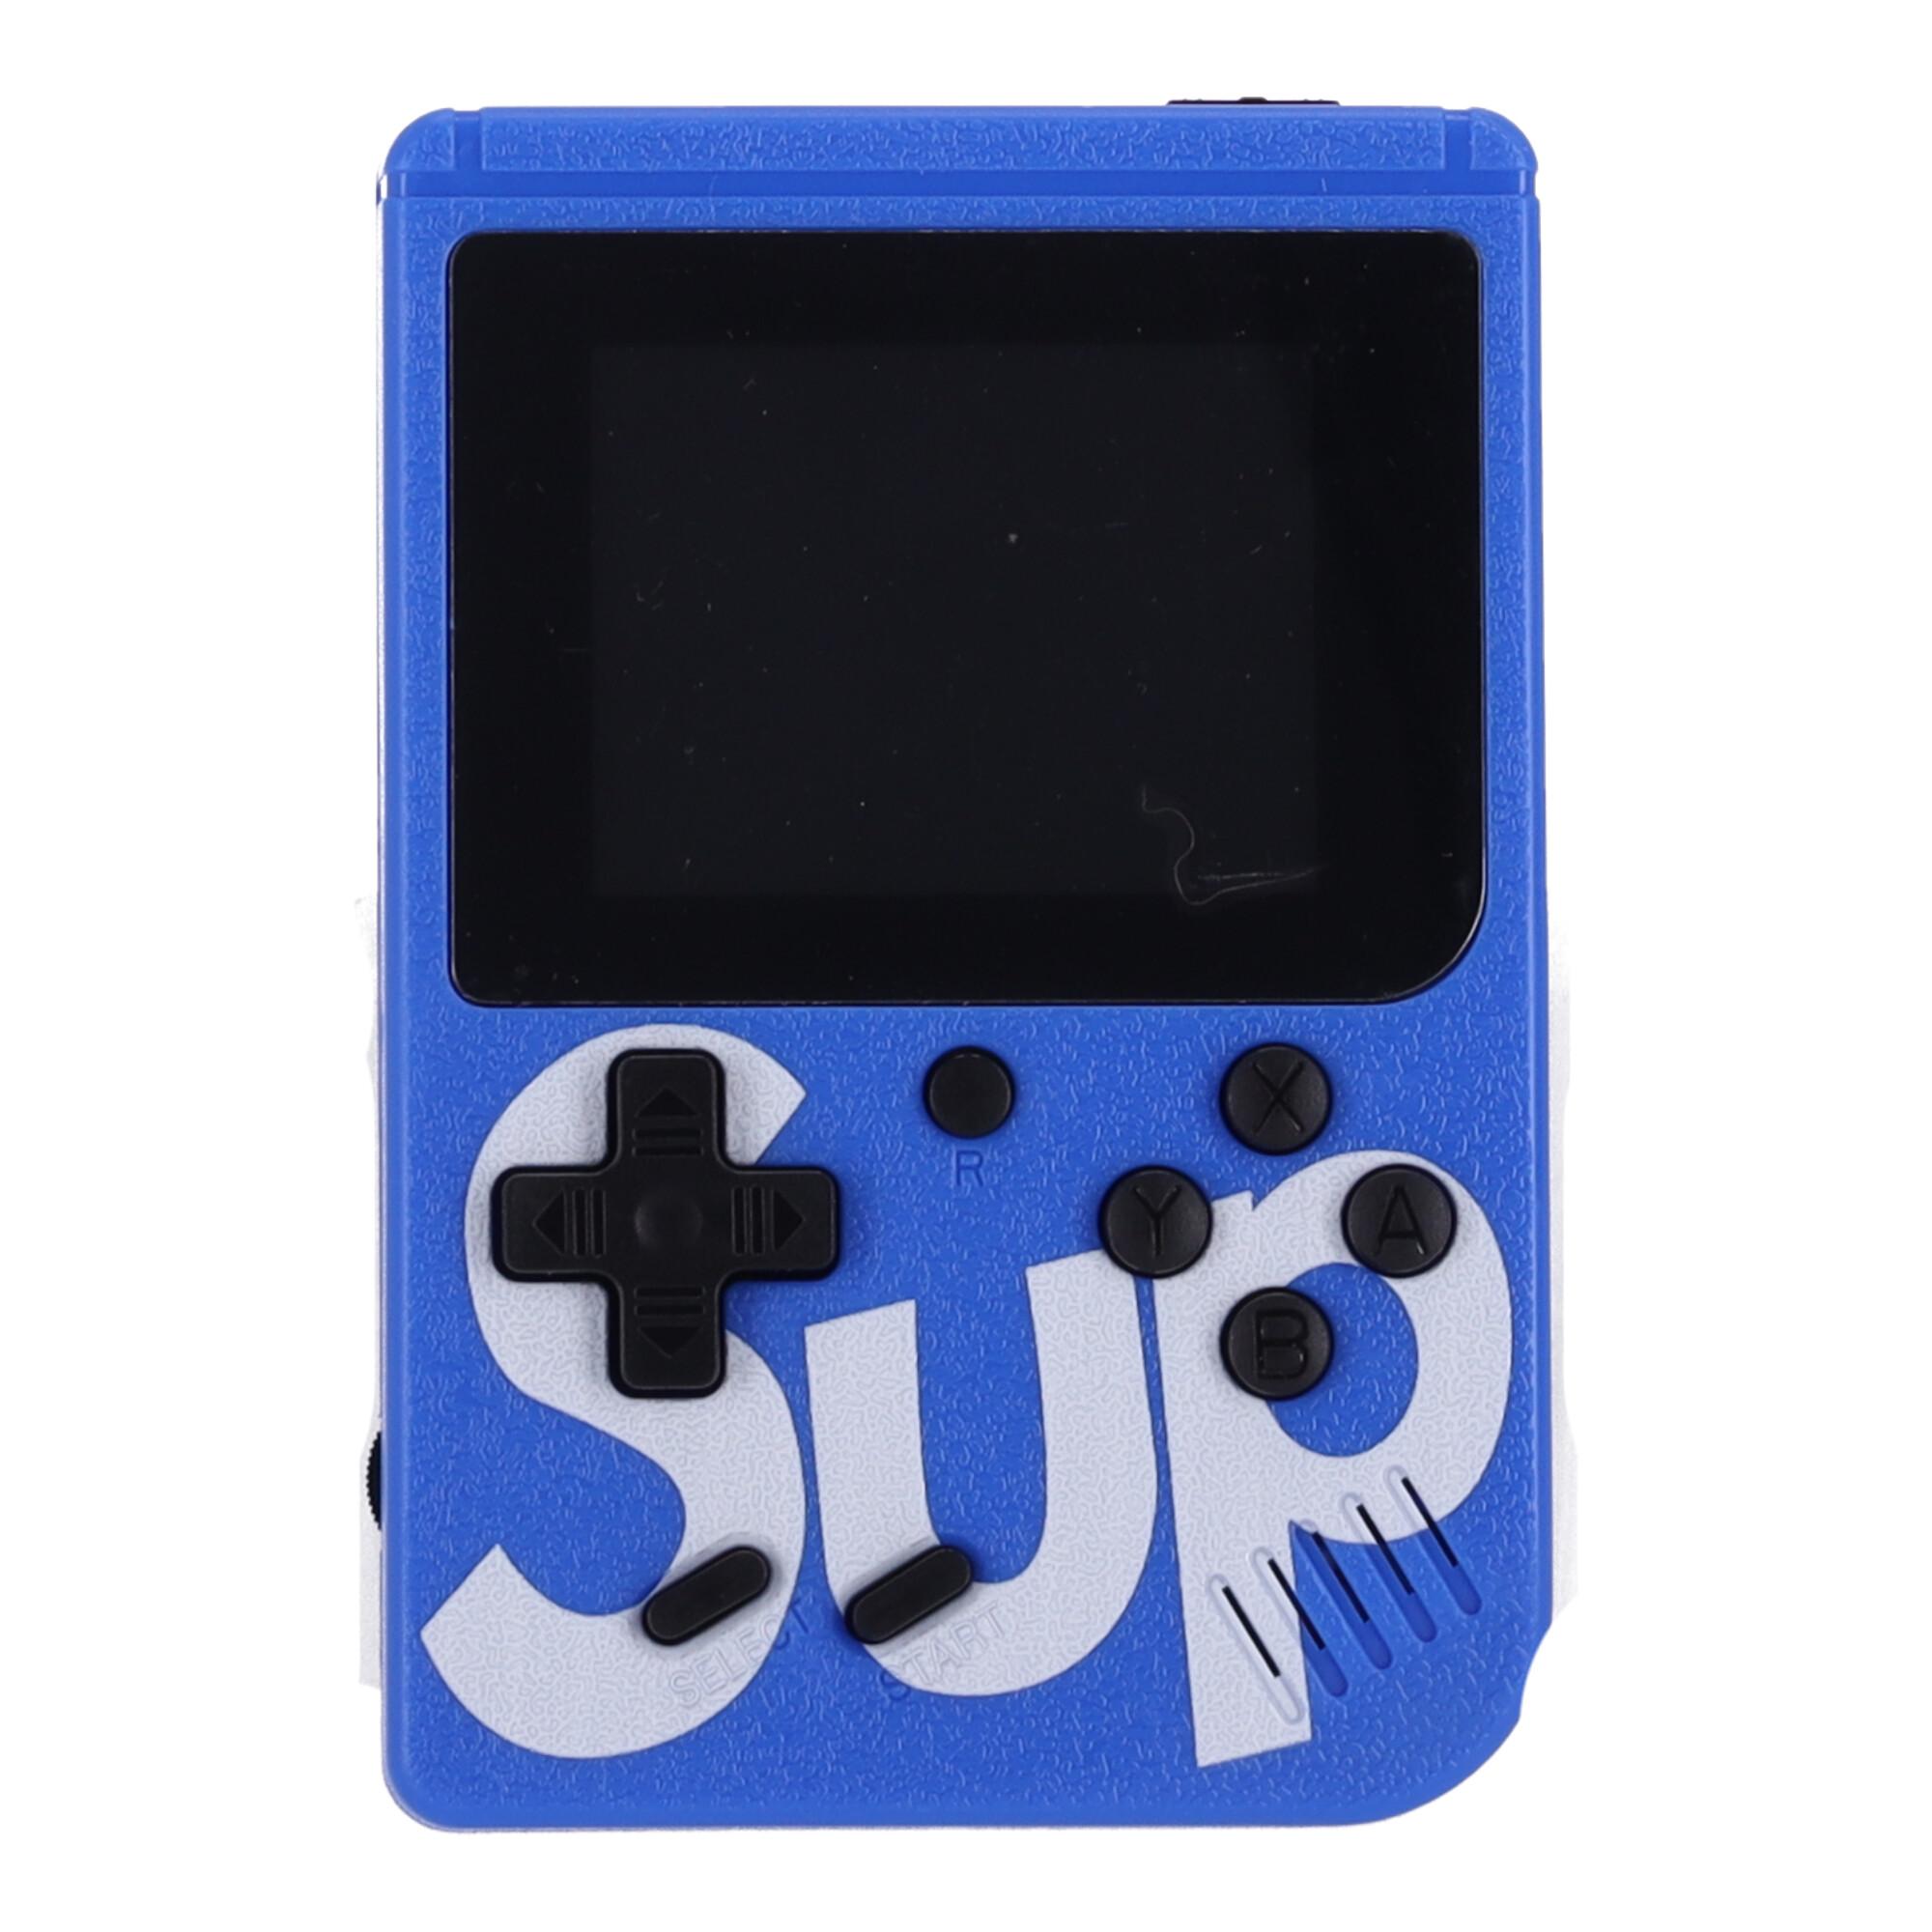 Mini konsola przenośna SUP 400 gier – niebieska (dla jednego gracza)